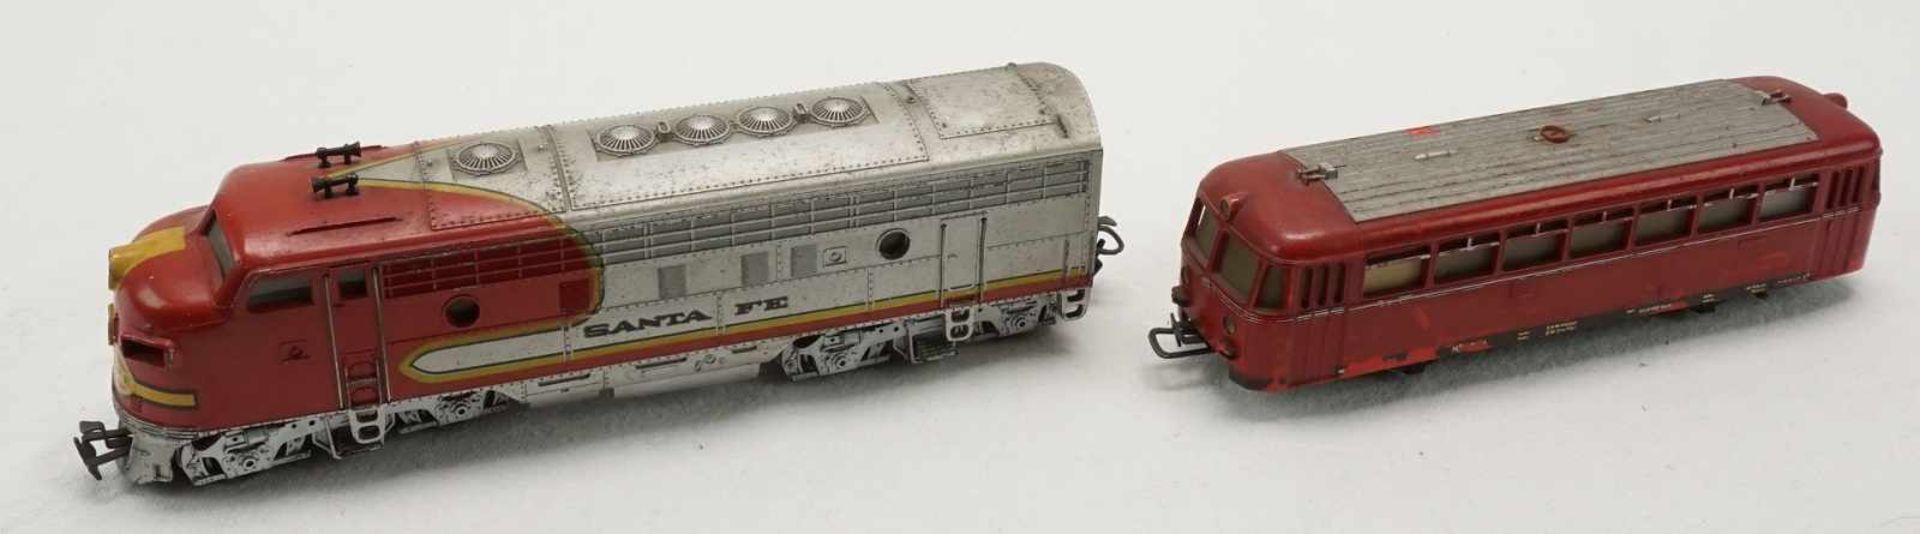 Vier Märklin Diesellokomotiven, Spur H01) Märklin Santa Fe, Spur H0, um 1960, Gusseisen, - Image 4 of 4